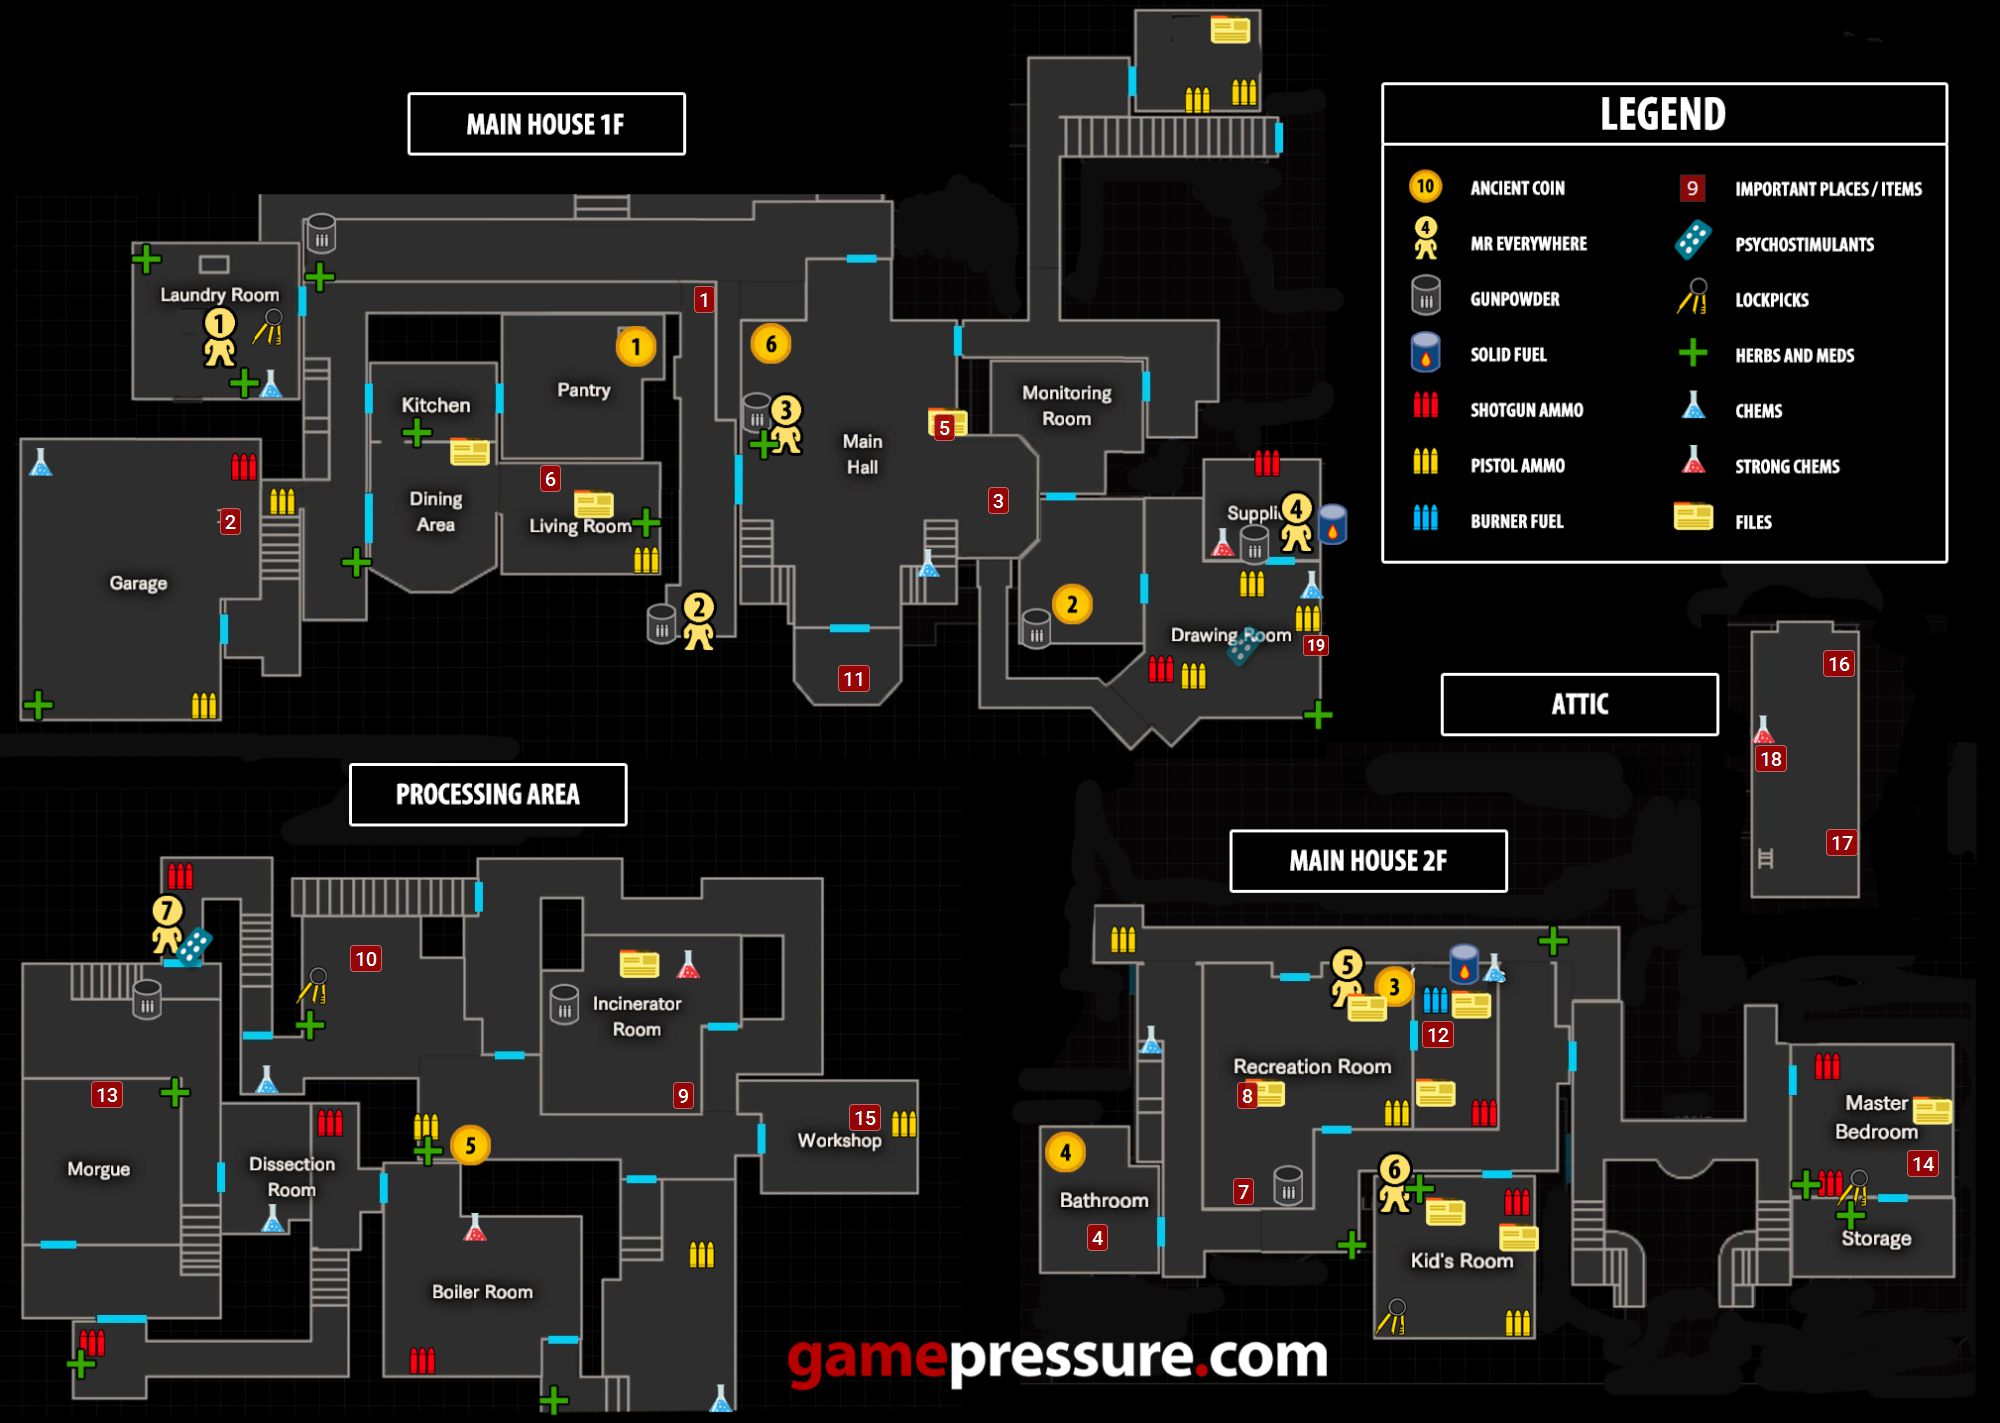 resident-evil-7-main-house-basement-map-secrets-gamepressure